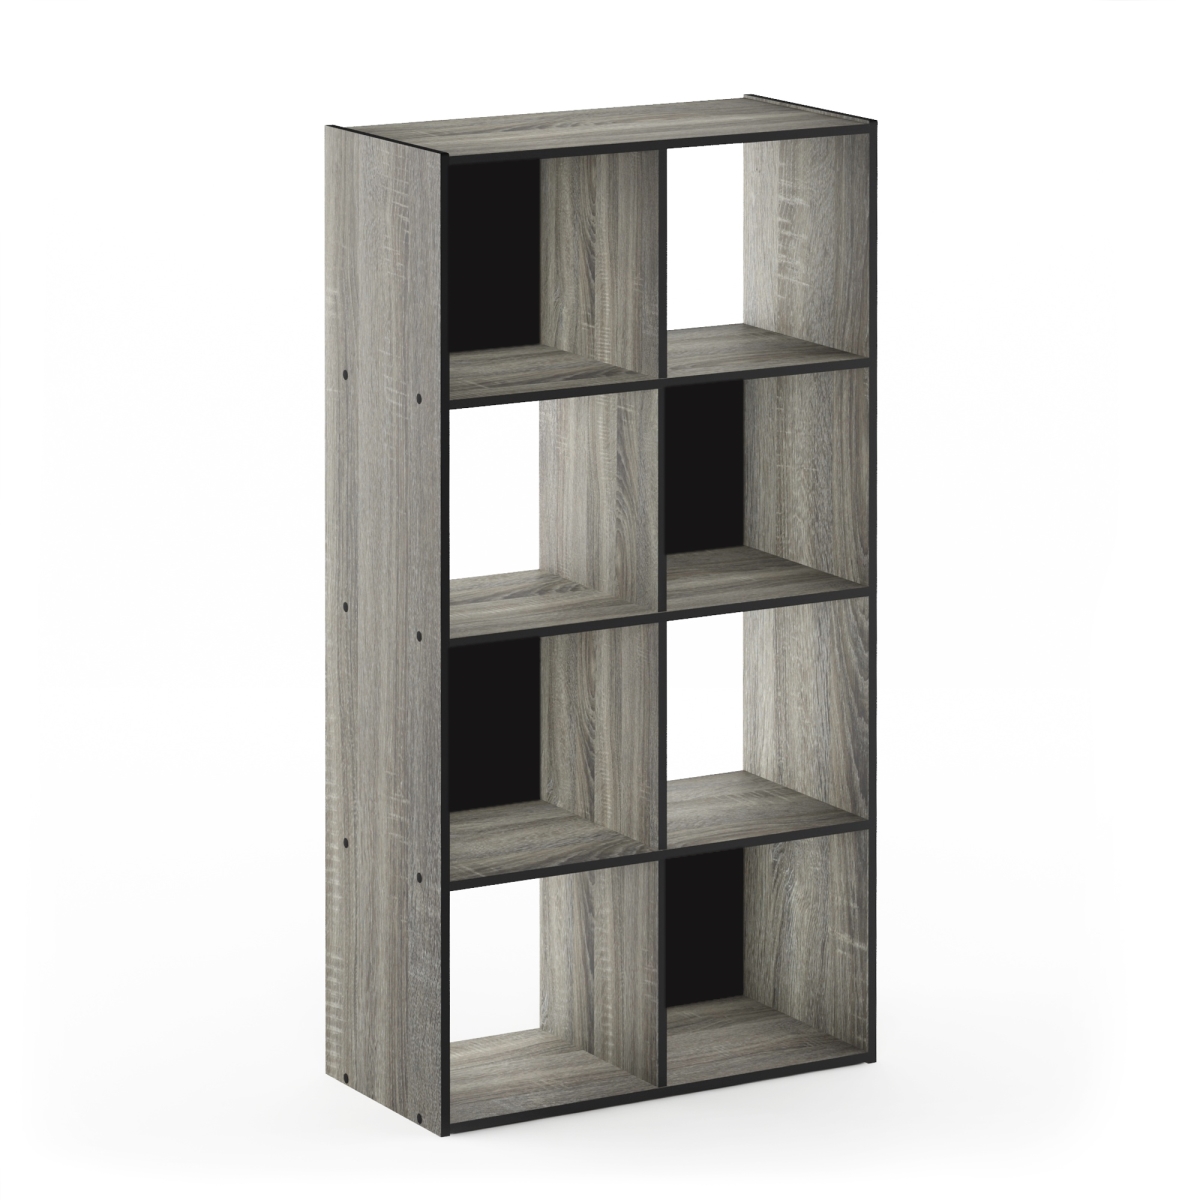 18054gyw 4 X 2 In. Pelli Cubic Storage Cabinet, French Oak Grey & Black